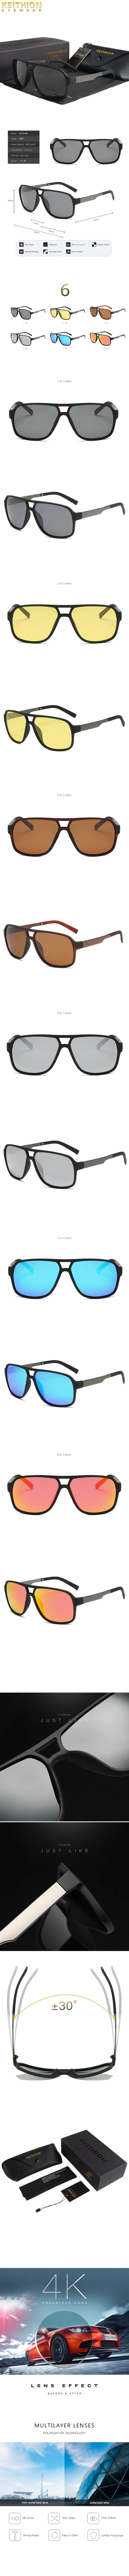 KEITHION, солнцезащитные очки унисекс, квадратные, винтажные, солнцезащитные очки, известный бренд, солнцезащитные очки, поляризационные, Ретро стиль, женские, мужские, WarBLade